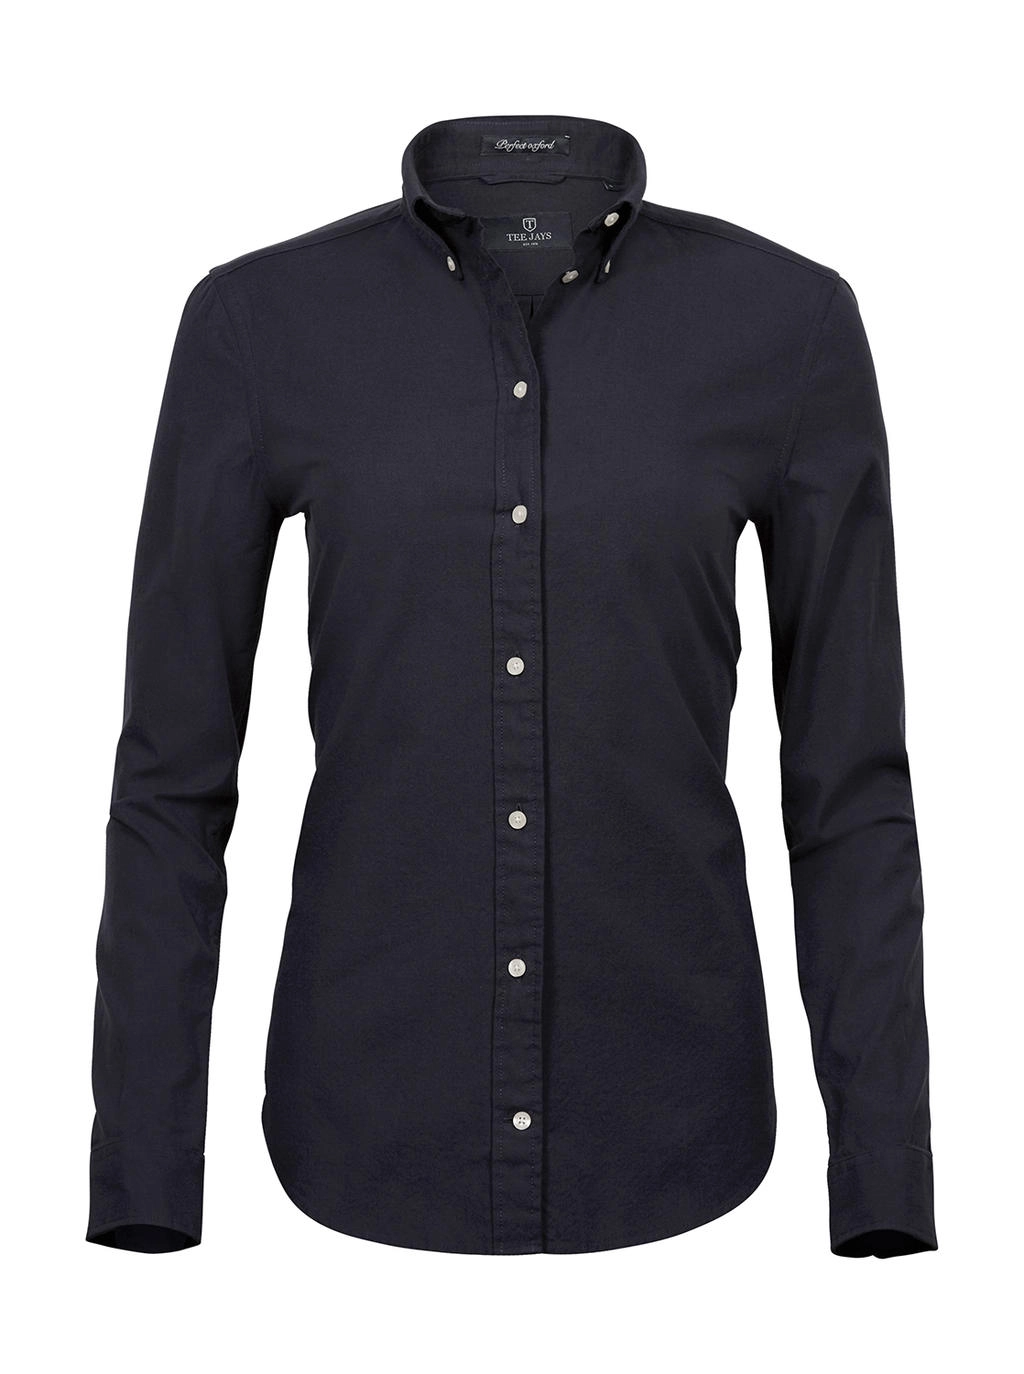 Ladies` Perfect Oxford Shirt zum Besticken und Bedrucken in der Farbe Black mit Ihren Logo, Schriftzug oder Motiv.